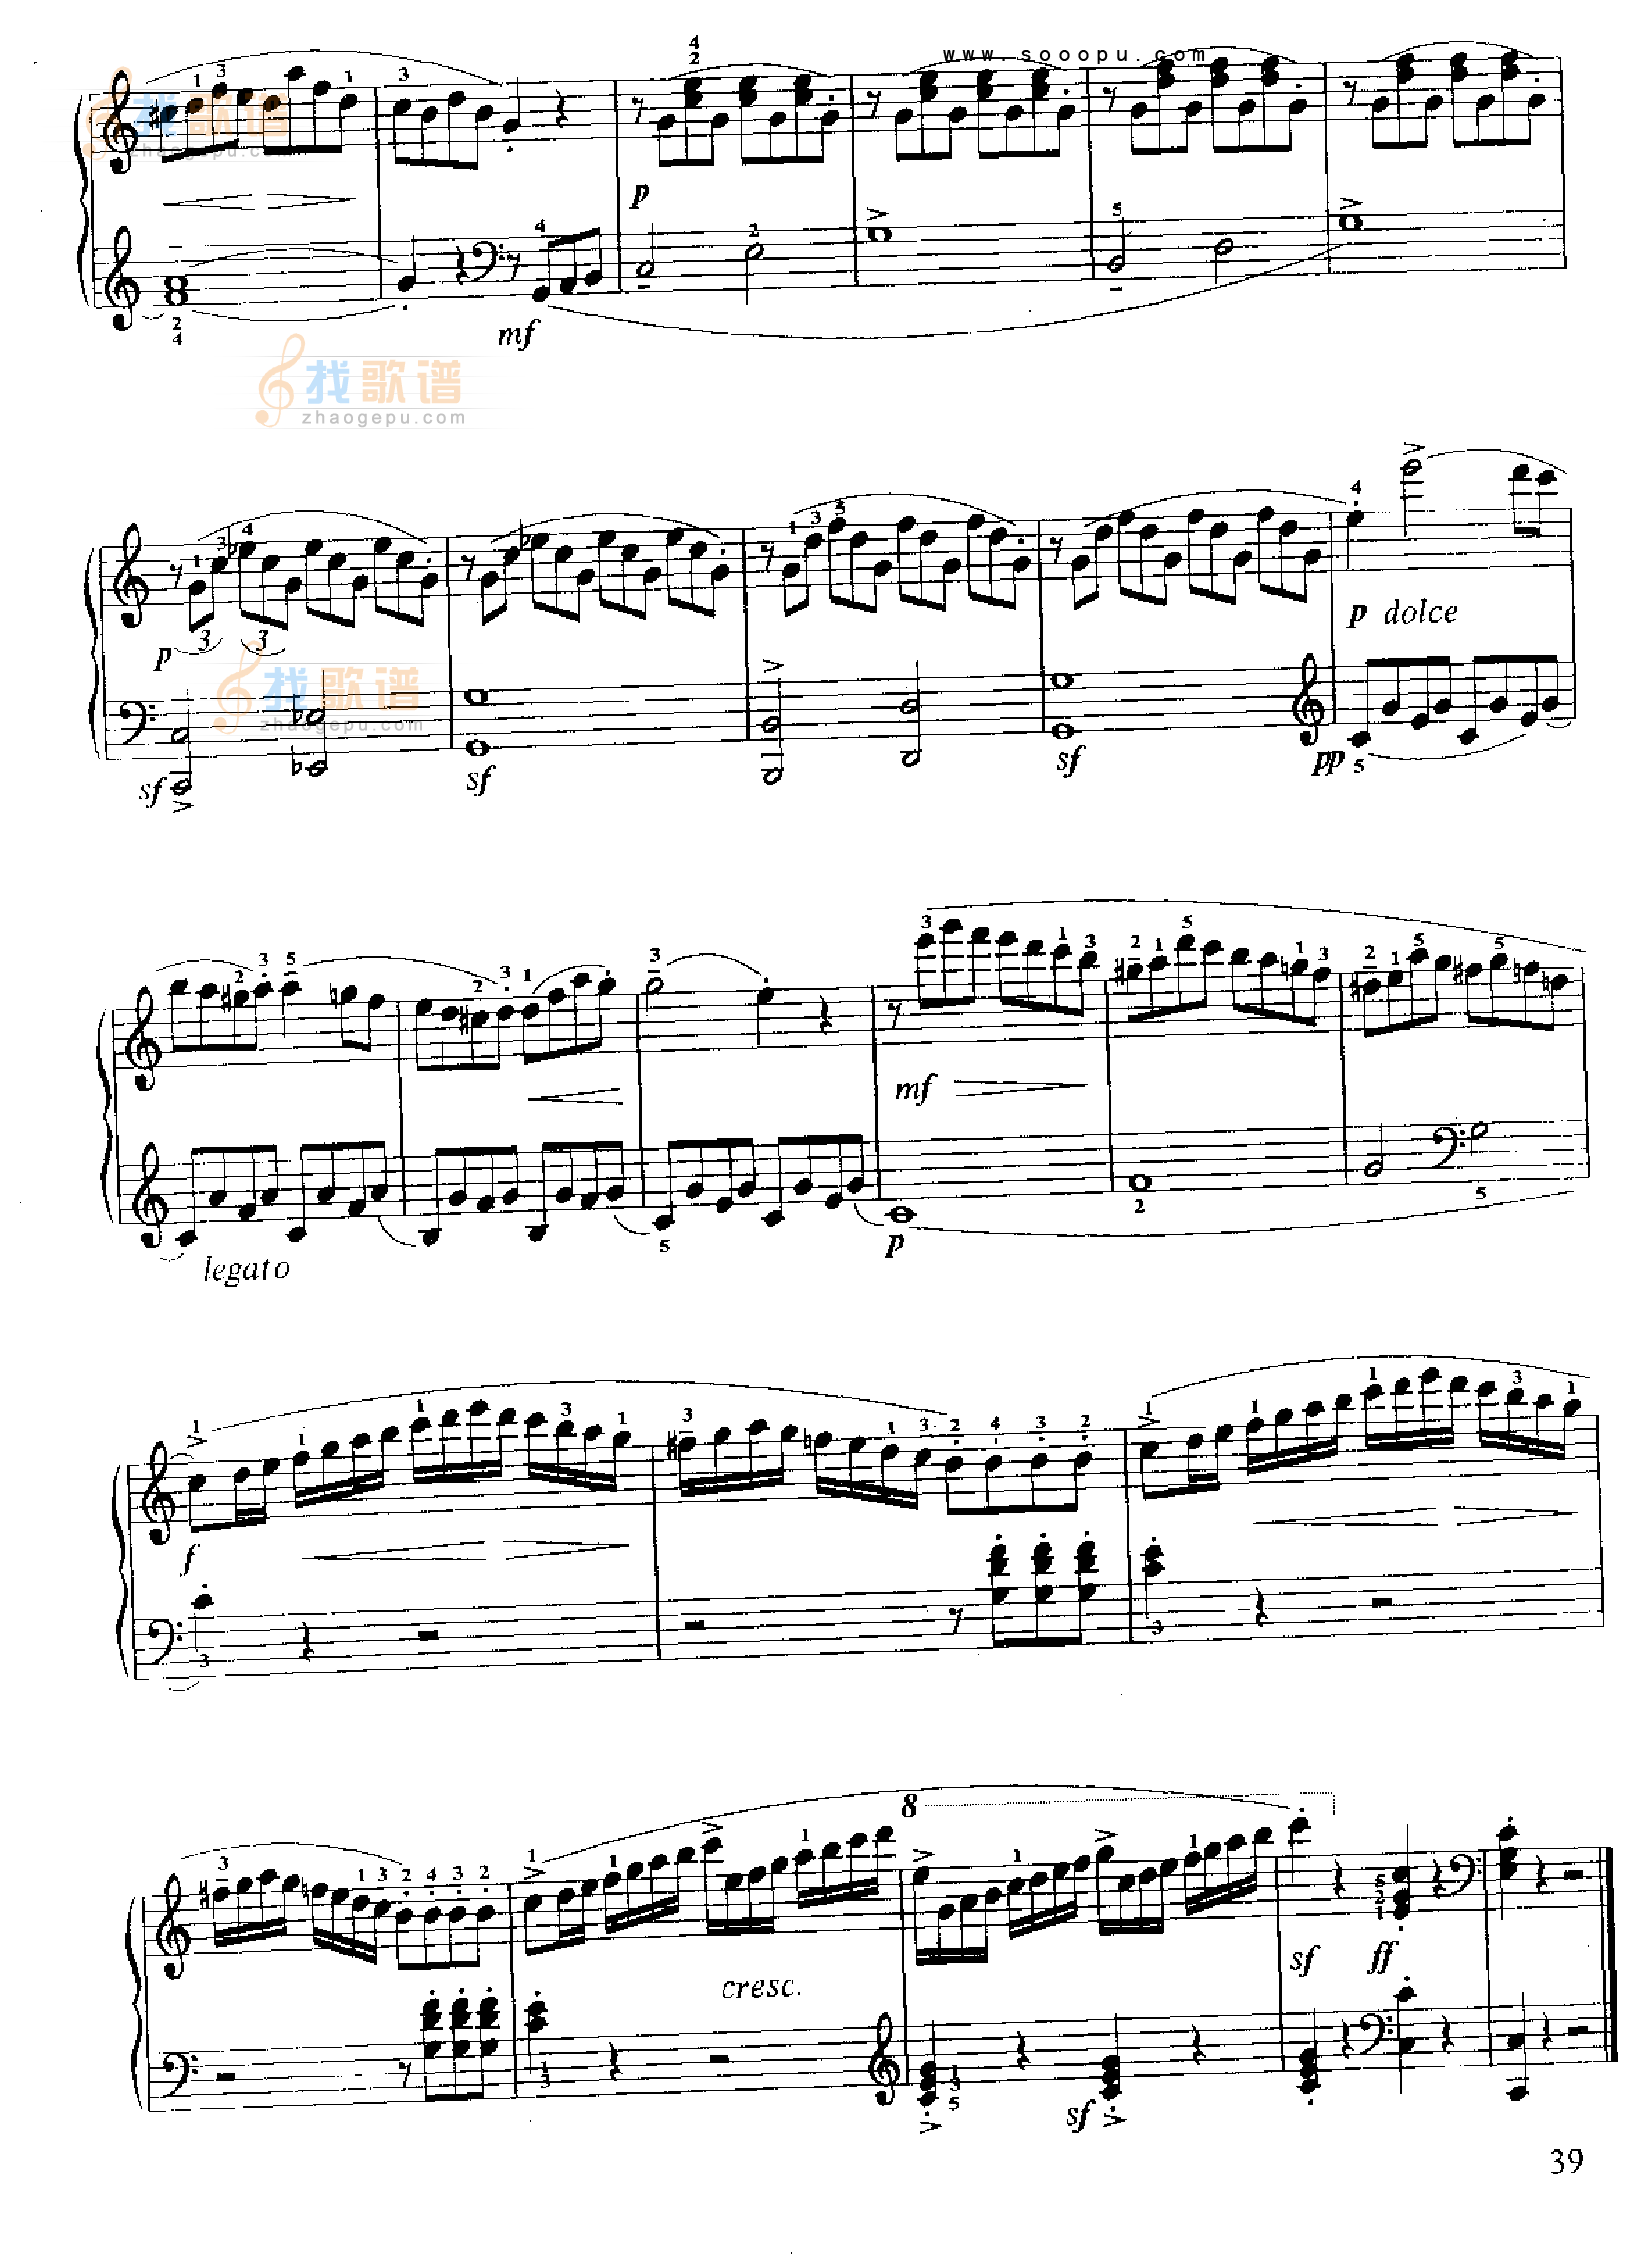 小奏鸣曲(Op.20 No.1)